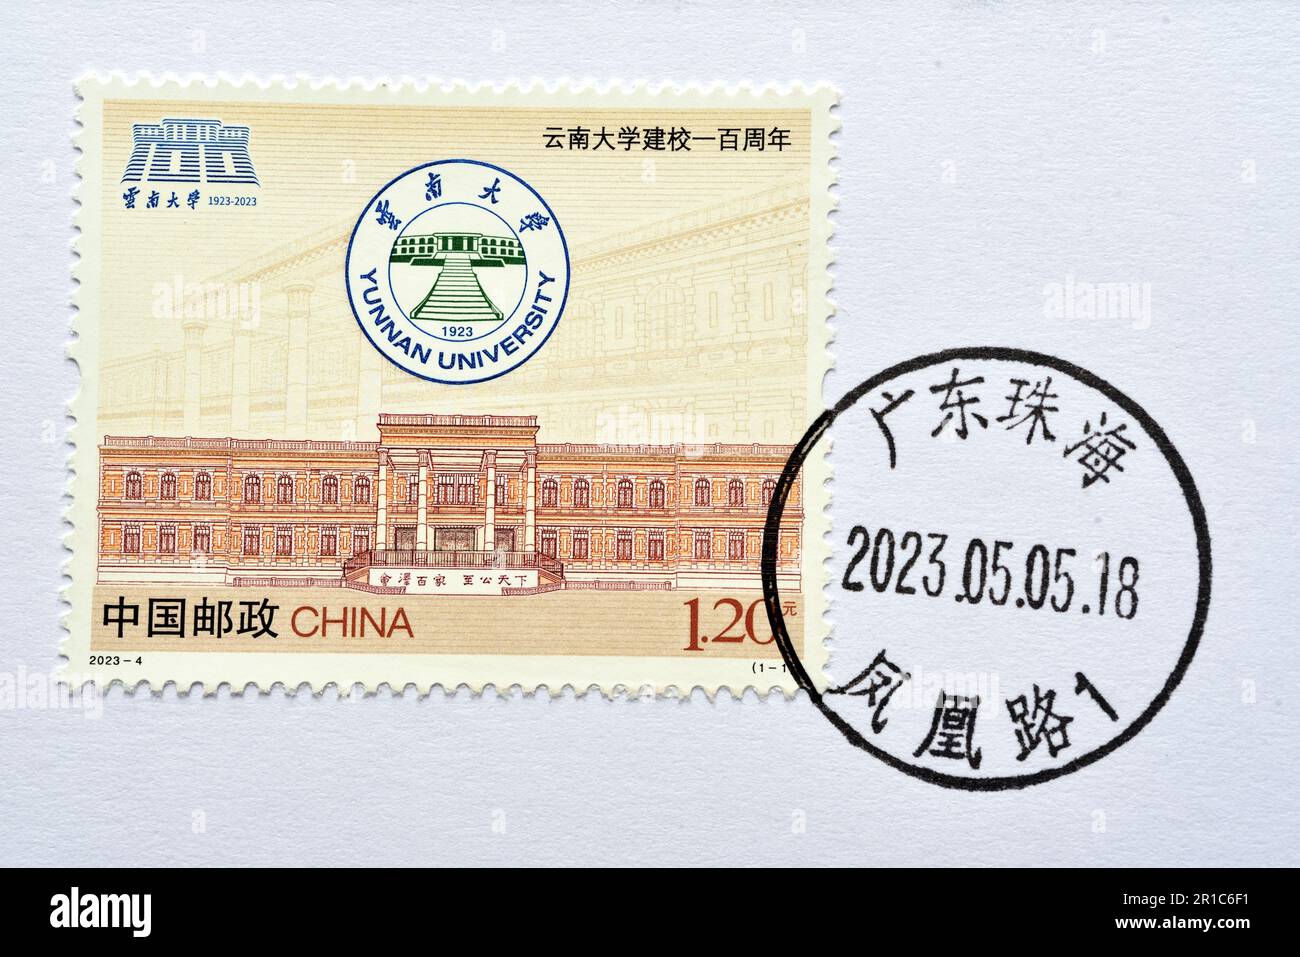 CHINE - VERS 2023: Un timbre imprimé en Chine montre 2023-4 l'anniversaire 100th de l'université du Yunnan , vers 2023. Banque D'Images